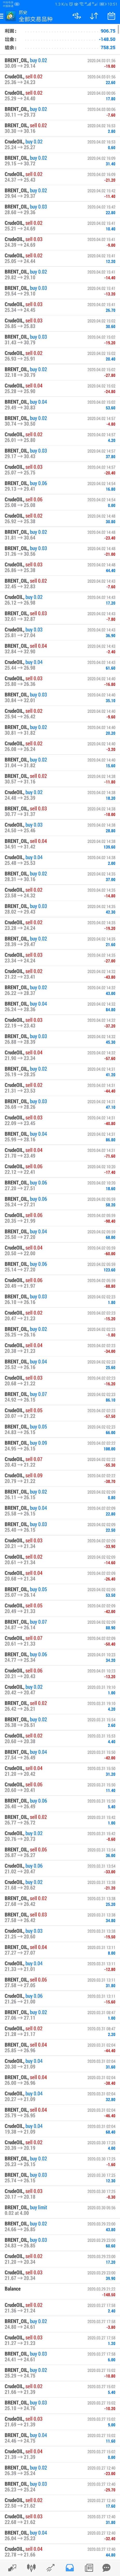 套利 暴涨 油价 原油 记录 交易